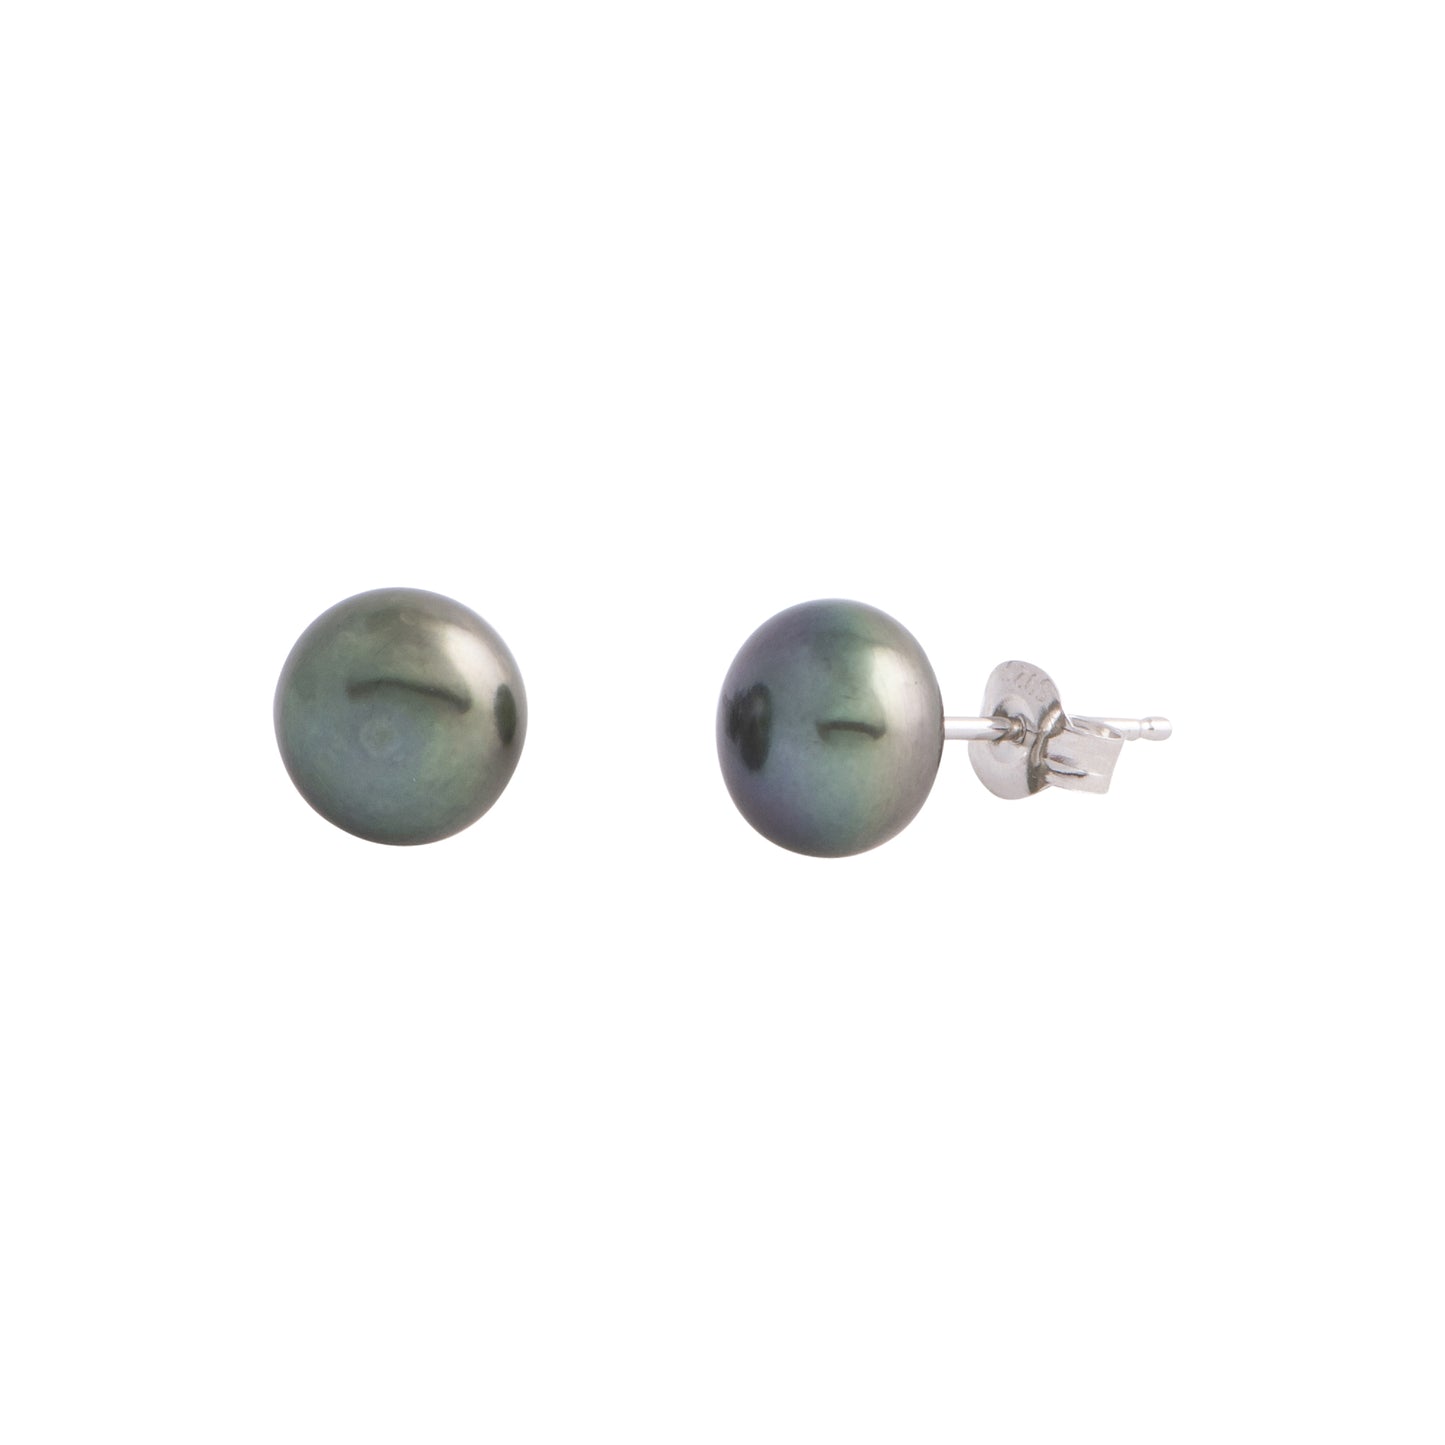 Amaya - Medium (8mm) pearl nickle-free earrings (Dark grey pearls)